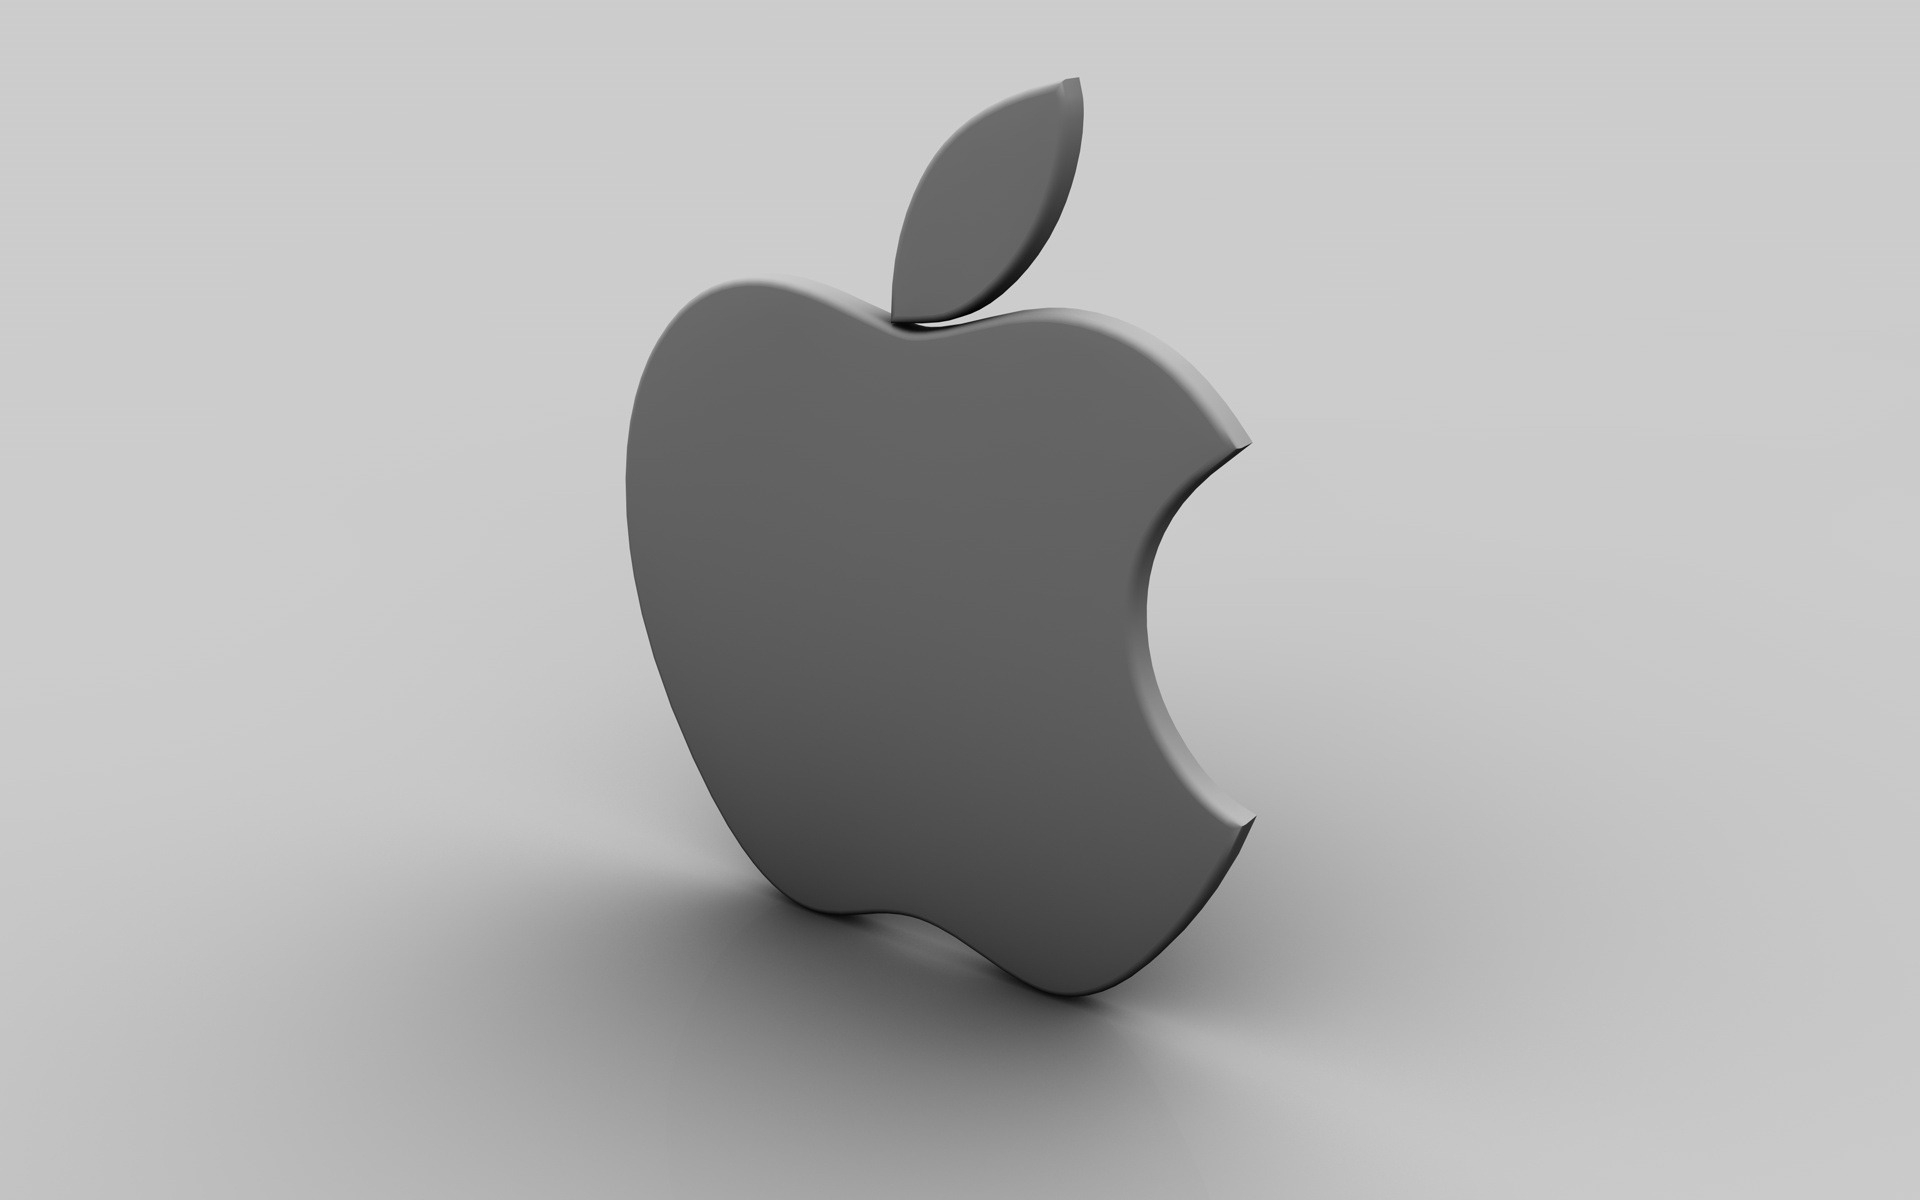 Desktop FHD apple, background, objects, gray